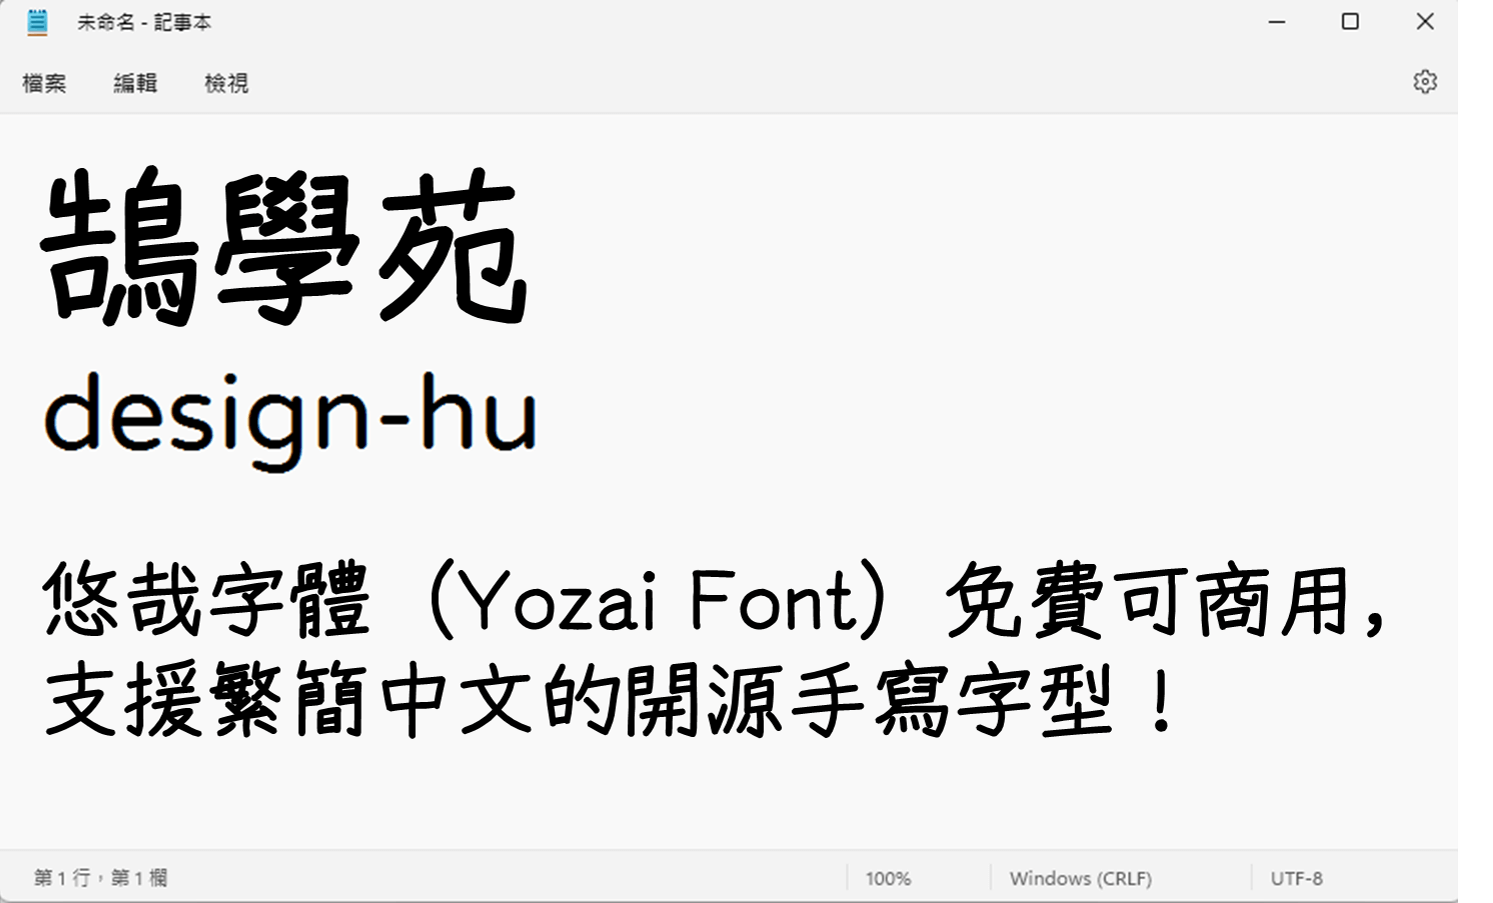 悠哉字體（Yozai Font） 使用教學』安裝完之後就可以使用 悠哉字體 字型囉！下方使用記事本中套用字型給大家看看~